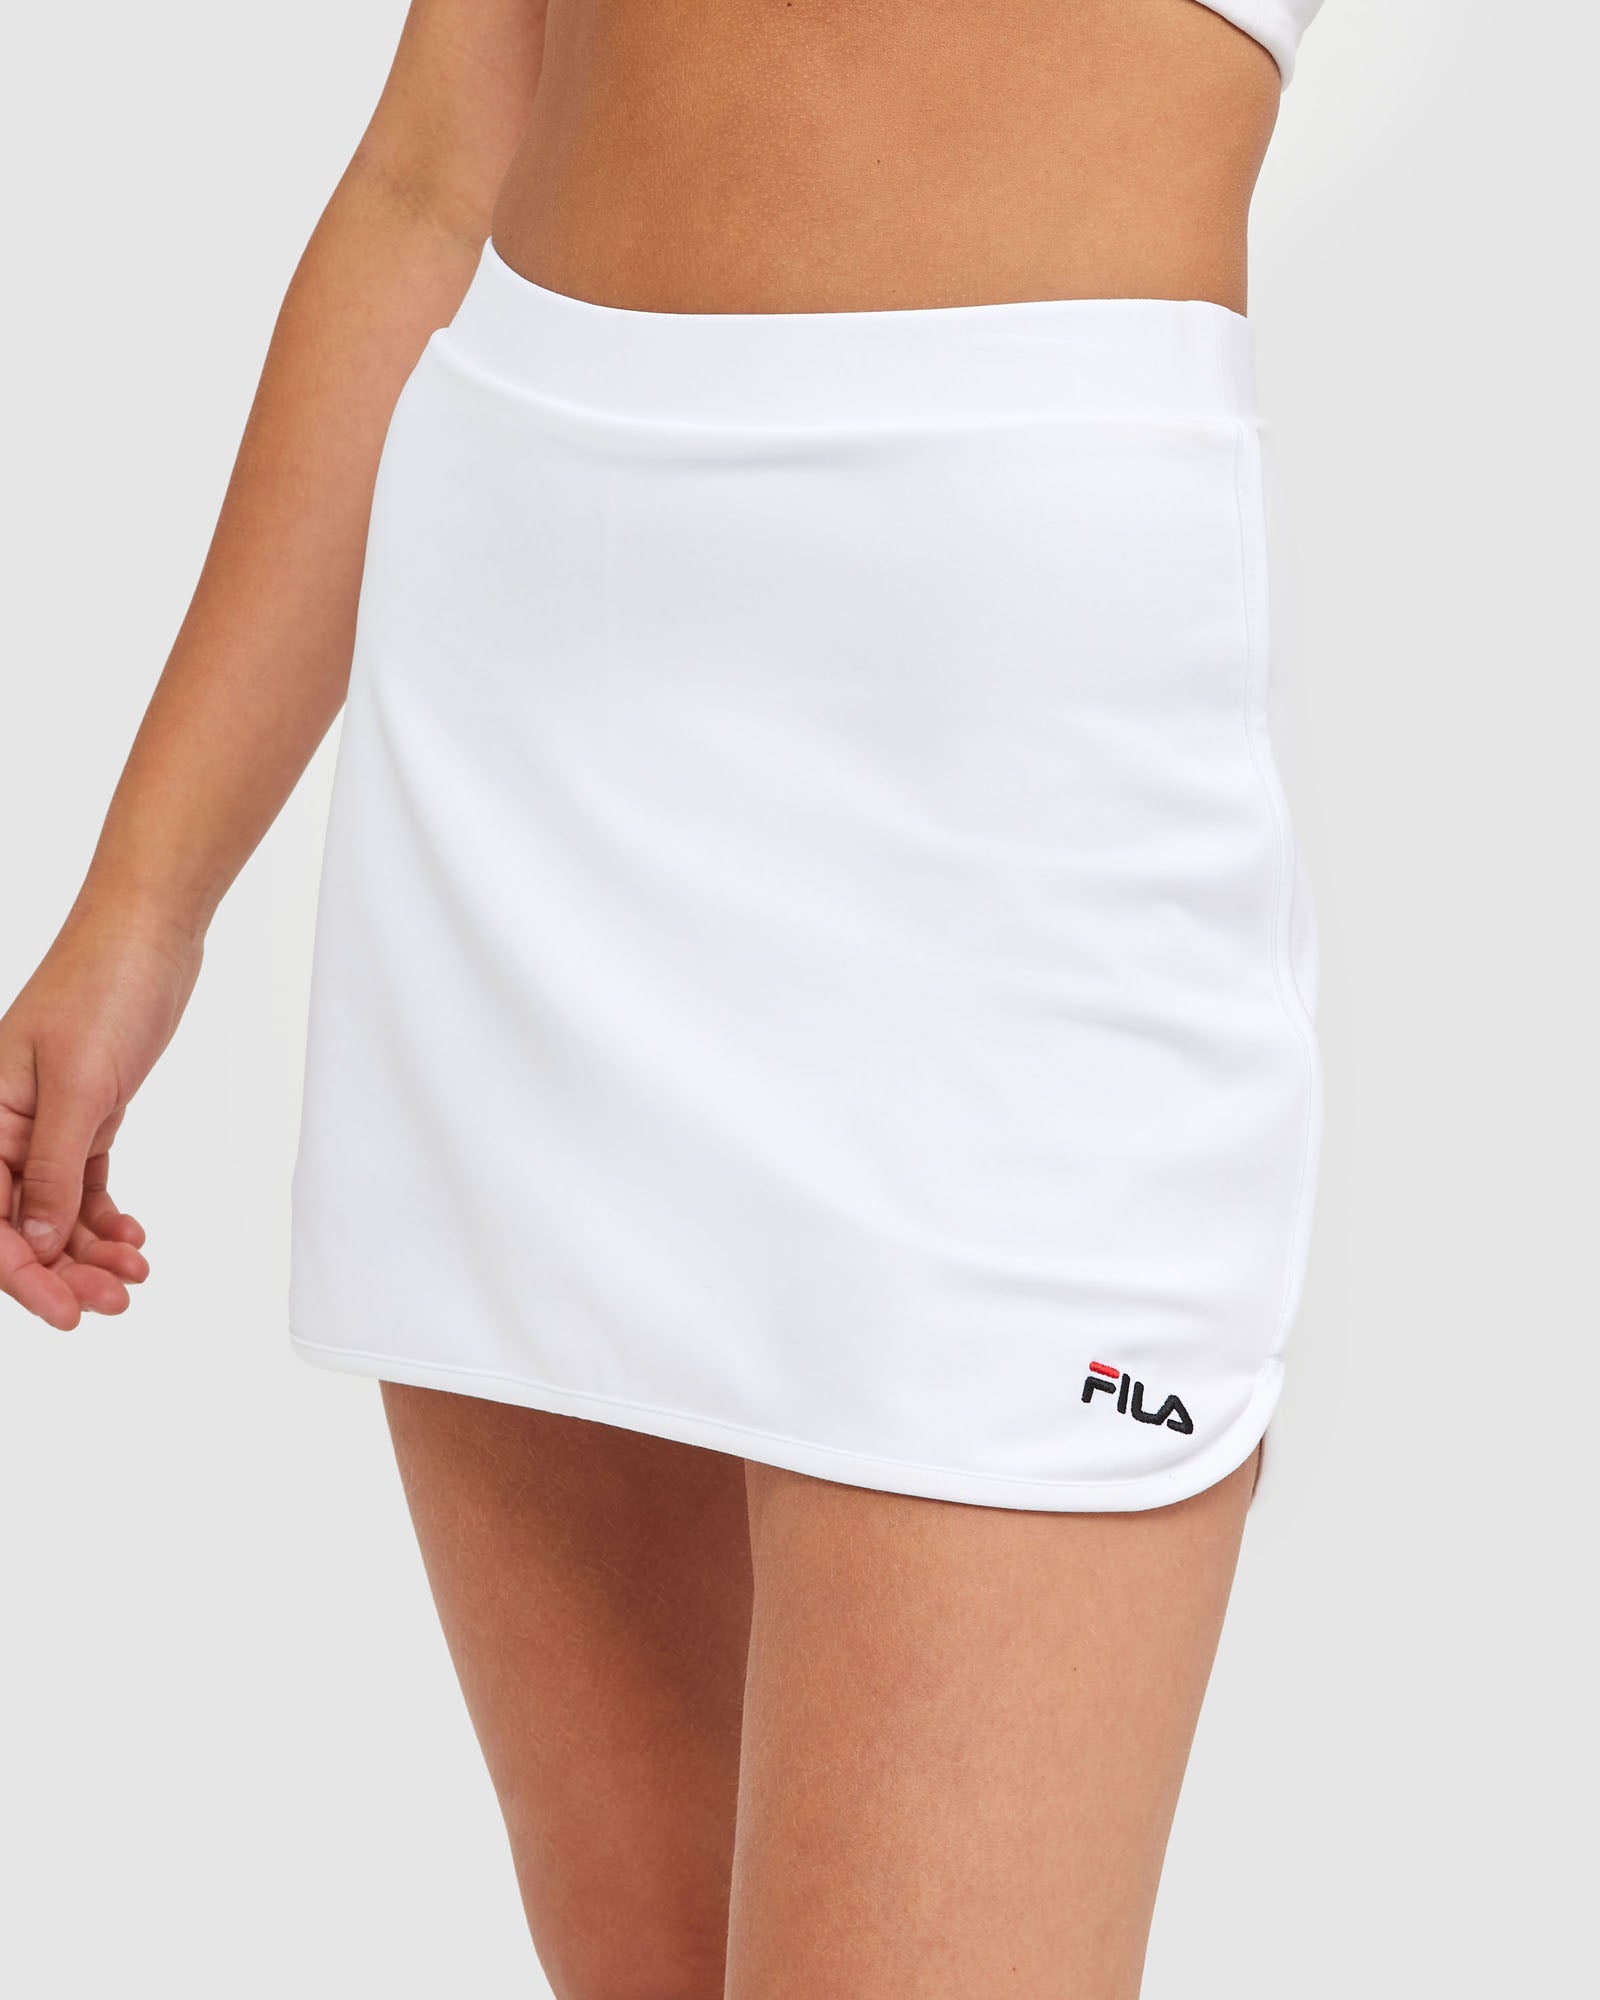 white tennis skirt australia